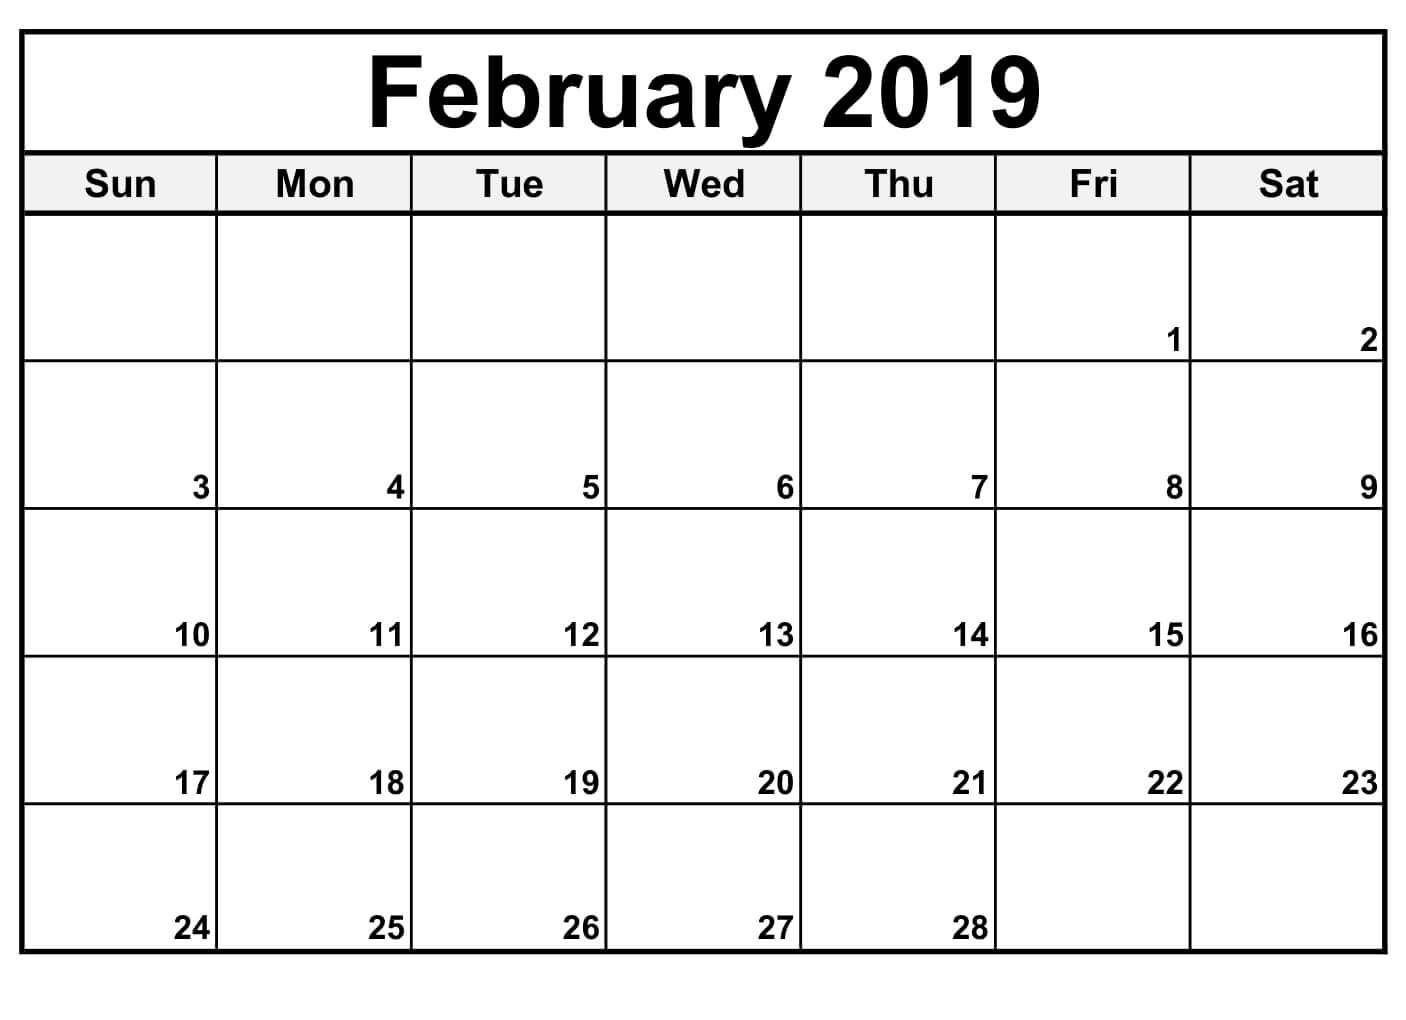 February 2019 Calendar Editable | Blank Calendar Template